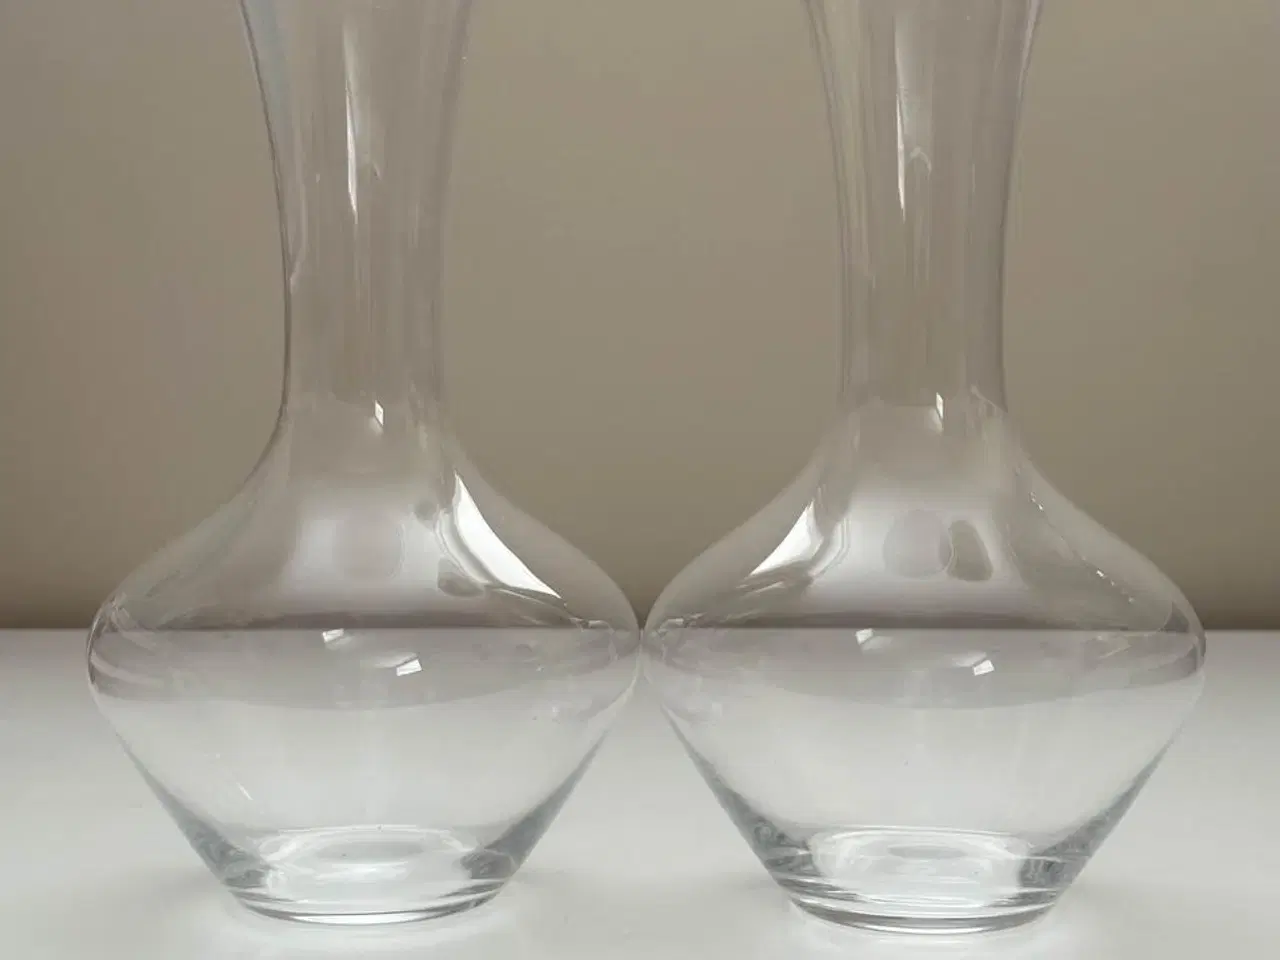 Billede 1 - Spiegelau vinkaffel / decanter - 2 stk. klar glas